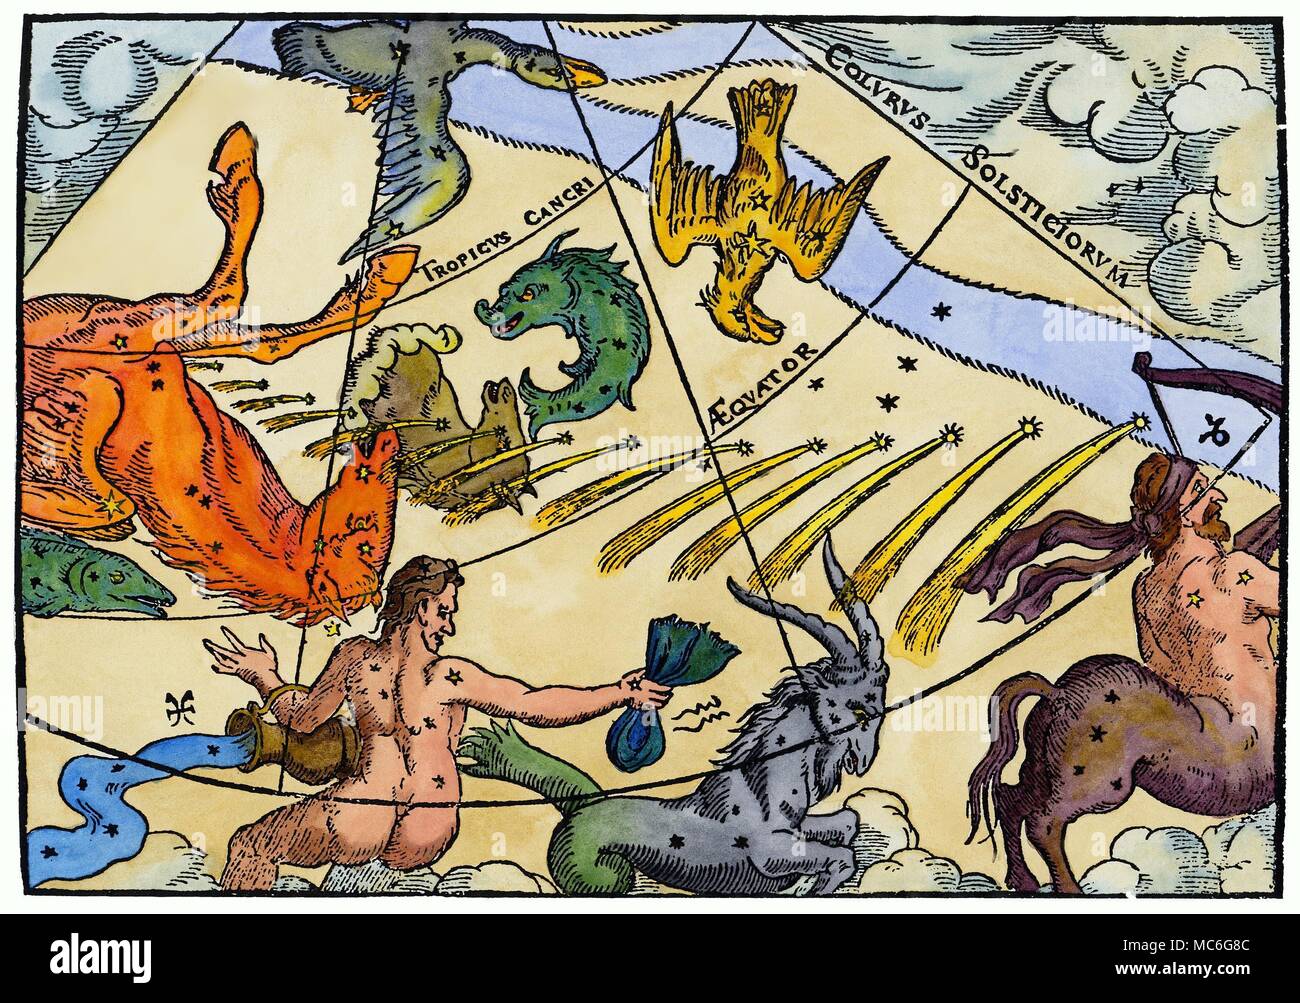 ATROLOGY - Kometen Der große Komet von 1577, der so tief in das Leben und Werk von Tycho Brahe beeinflusst. Es ist in der kontinuierlichen Darstellung abgebildet, die sich vom Pferd - Mensch Sagittaris auf das fliegende Pferd Pegasus, gegen Ende 1577. Gleichzeitigen broadsheet Stockfoto